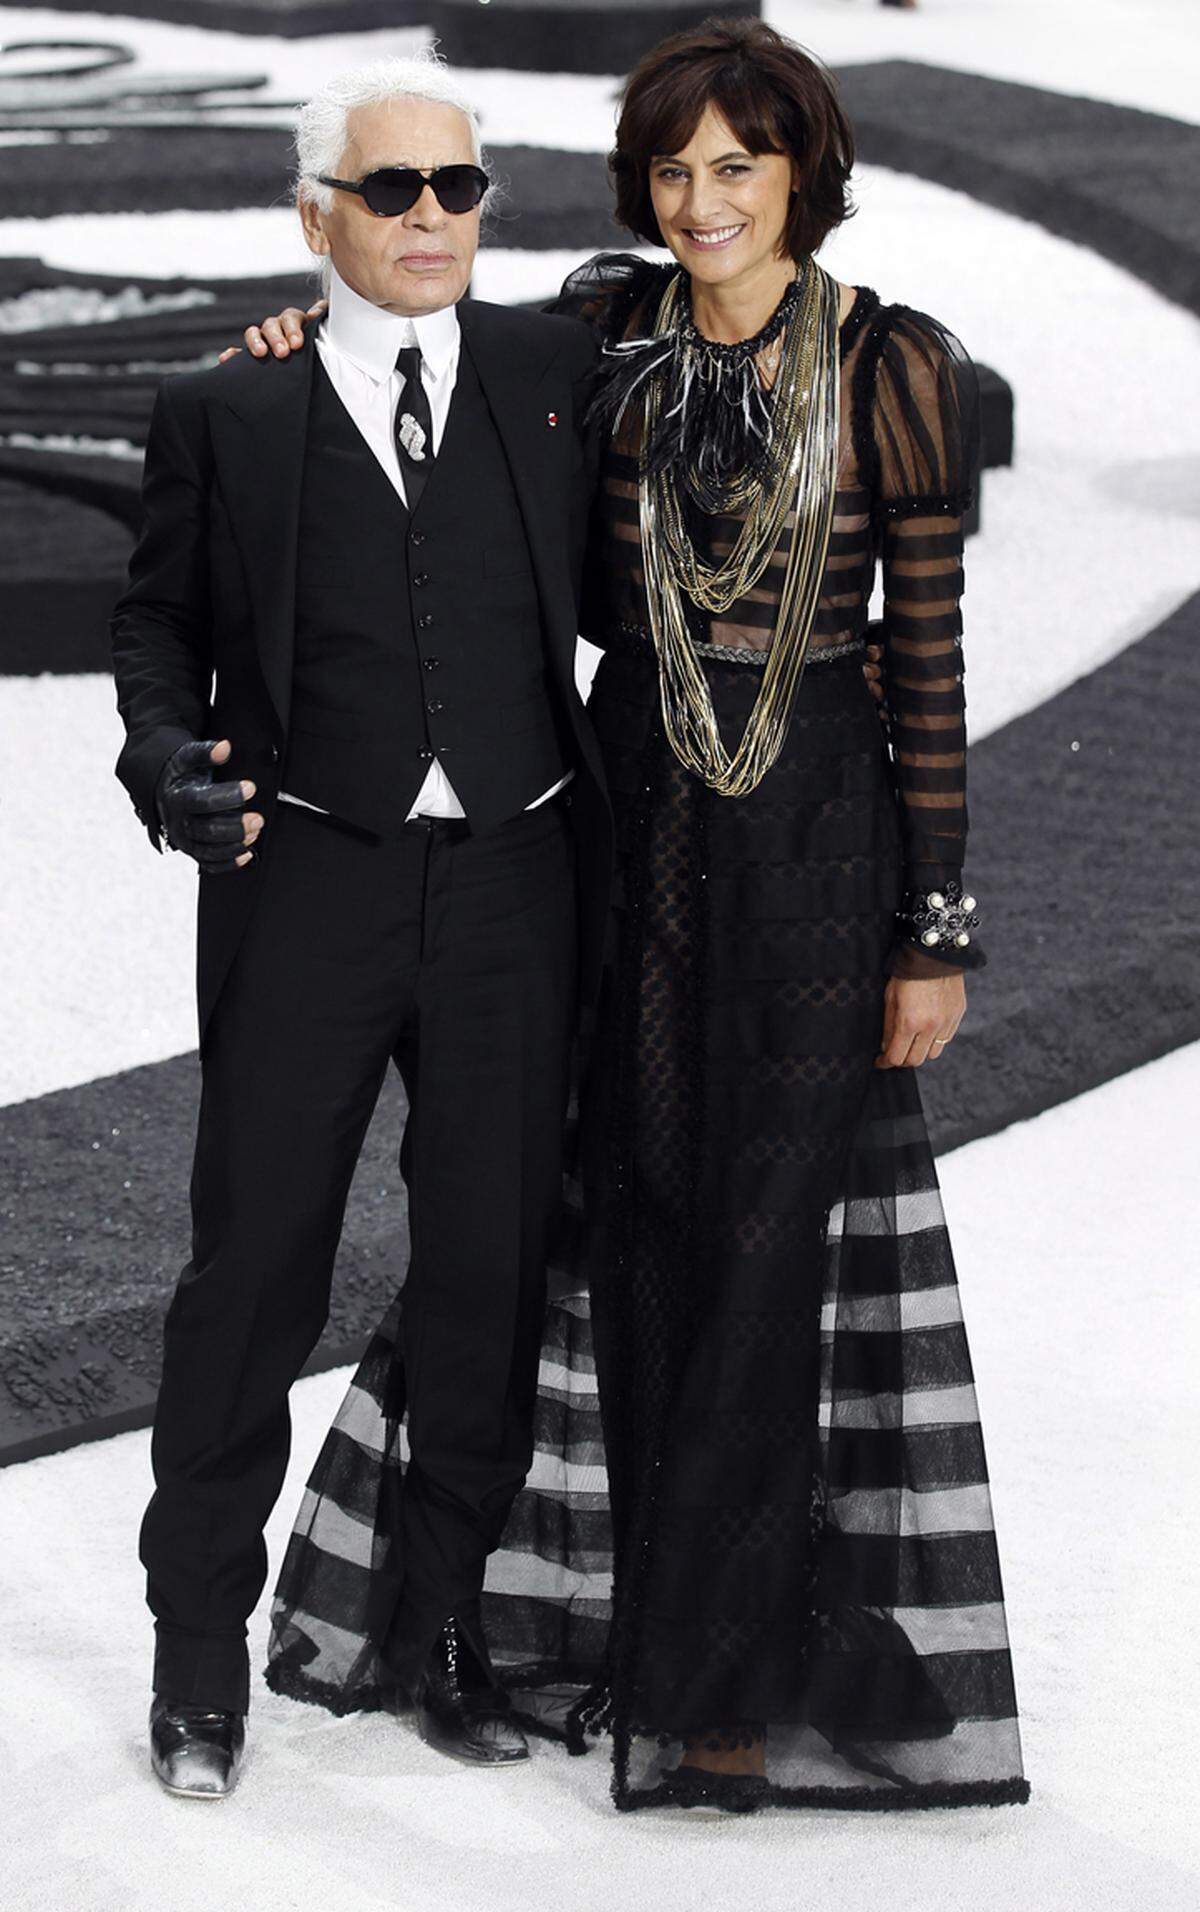 Seit 2010 hat die Modeindustrie ältere Models wieder für sich entdeckt. So ließ Karl Lagerfeld beispielsweise seine ehemalige Muse, die 55 Jahre alte Inès de la Fressange über den Chanel-Catwalk in Paris laufen.